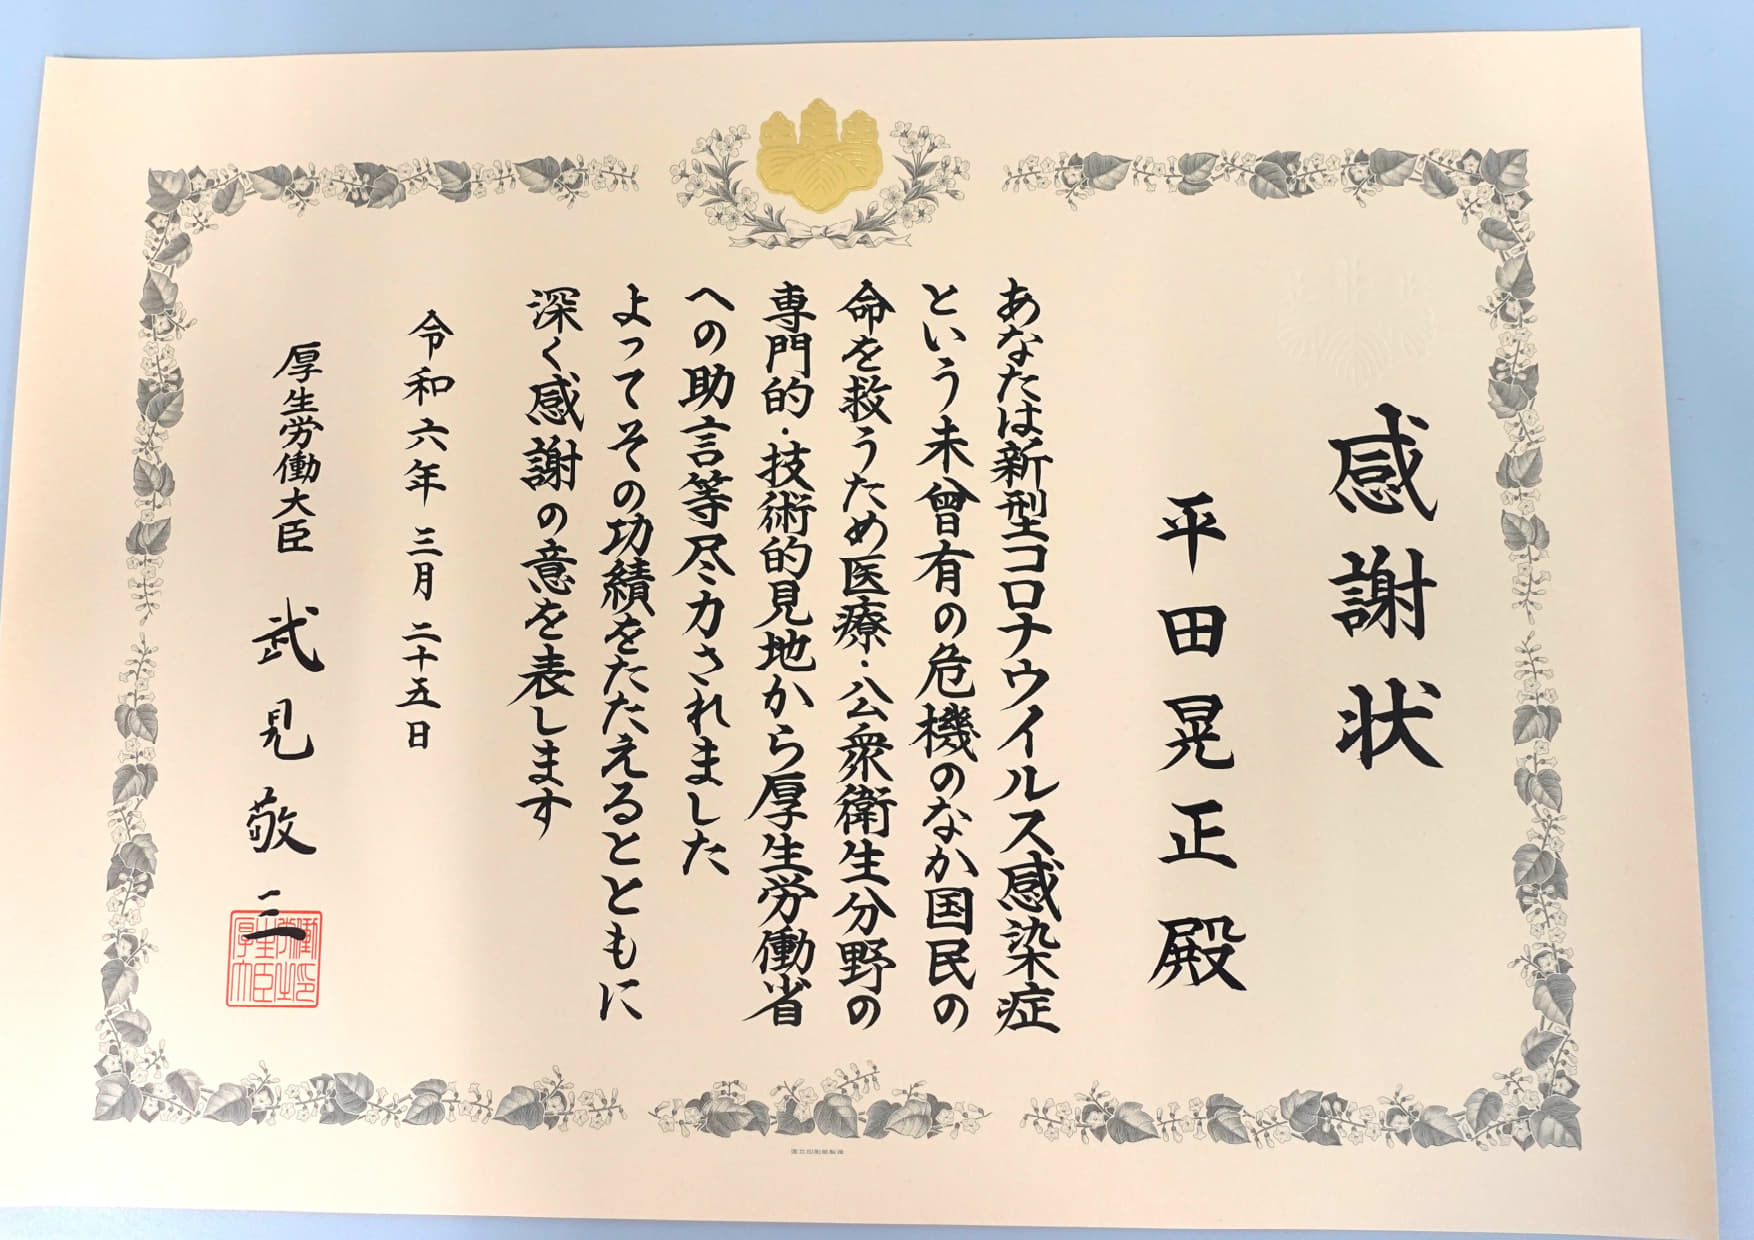 平田晃正教授が新型コロナウイルス感染症対策への貢献に関して厚生労働大臣より感謝状を受領しました。